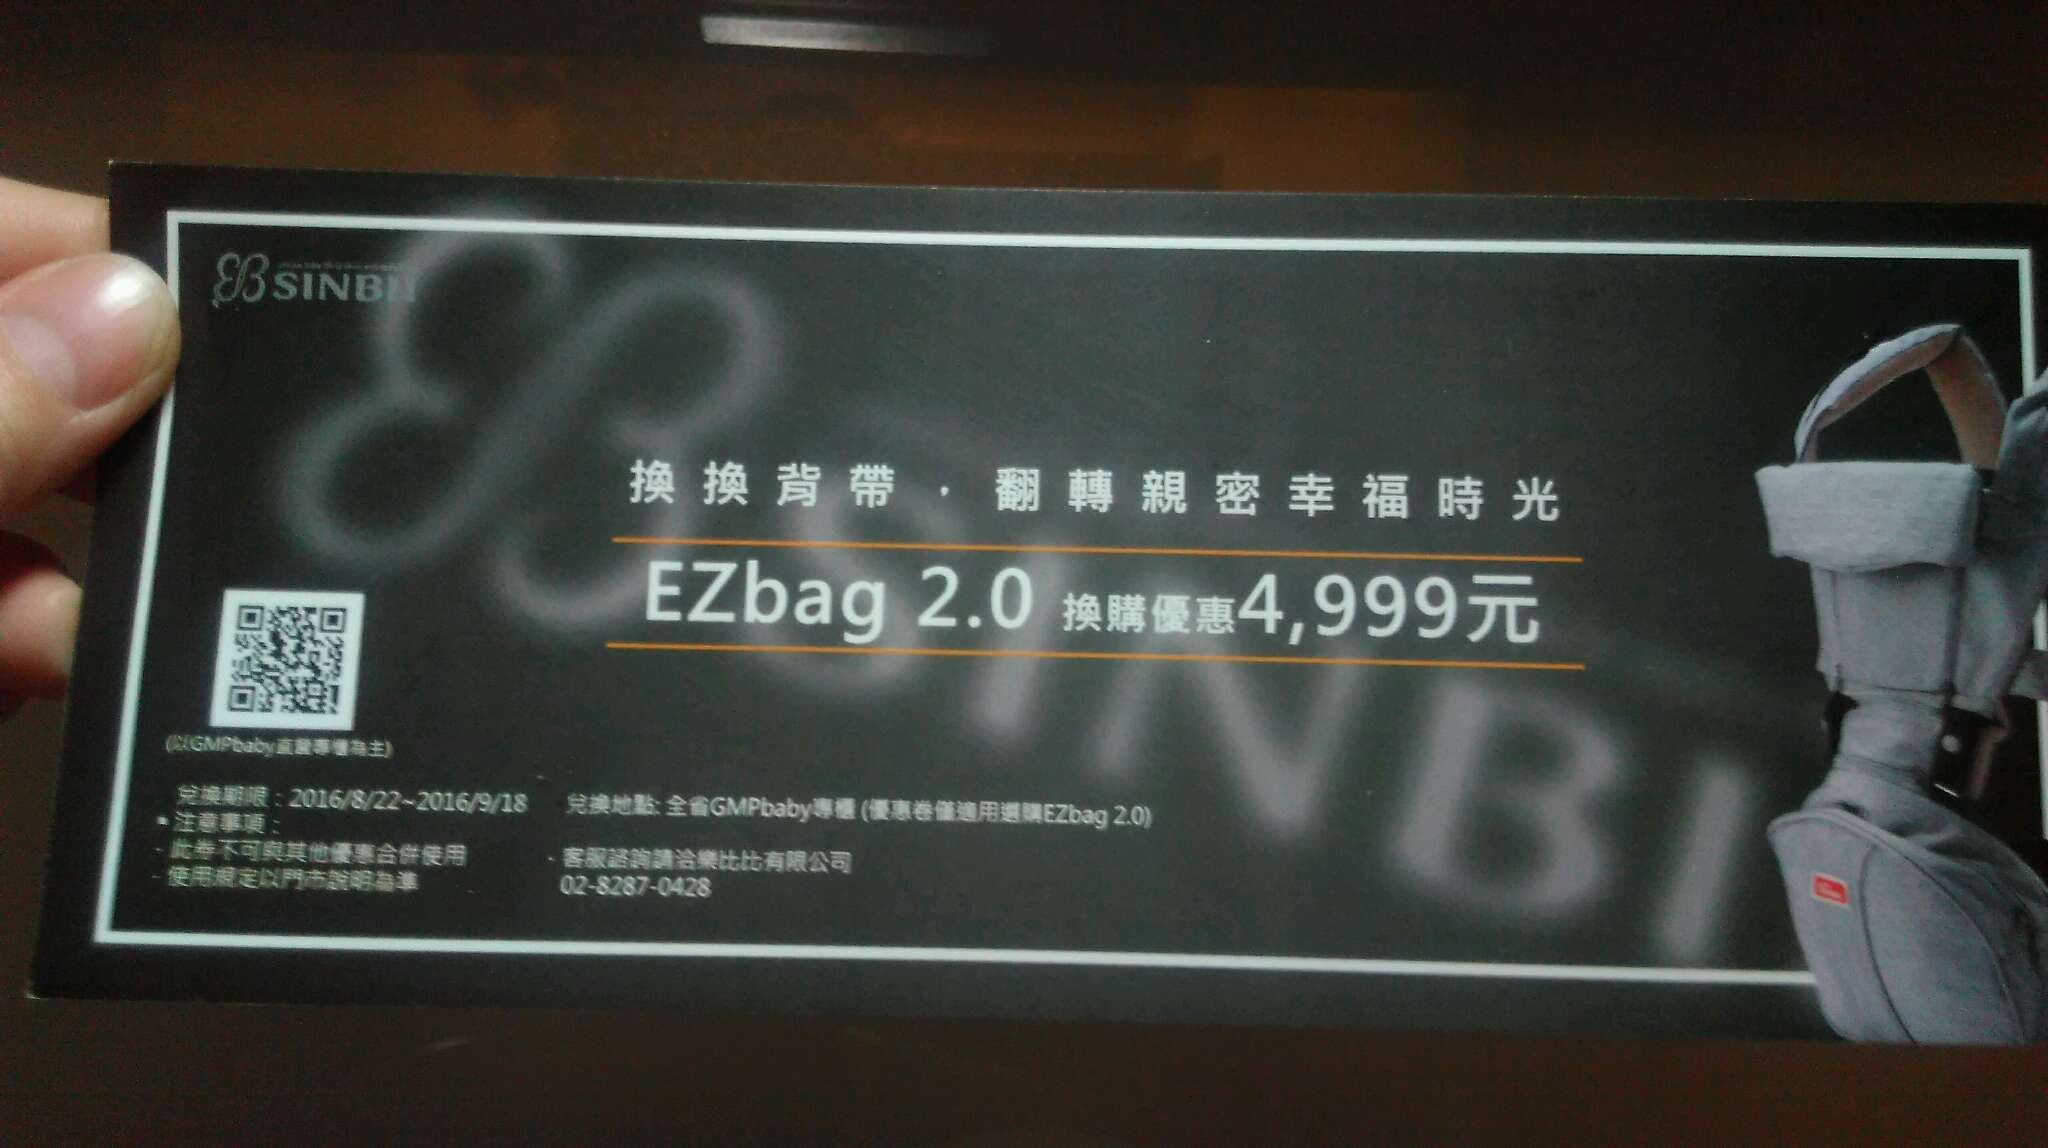 有媽咪需要的嗎? 可以用$4999的價格換購EZbag 2.0全新背帶 市價$5580 換購日期到9月18日